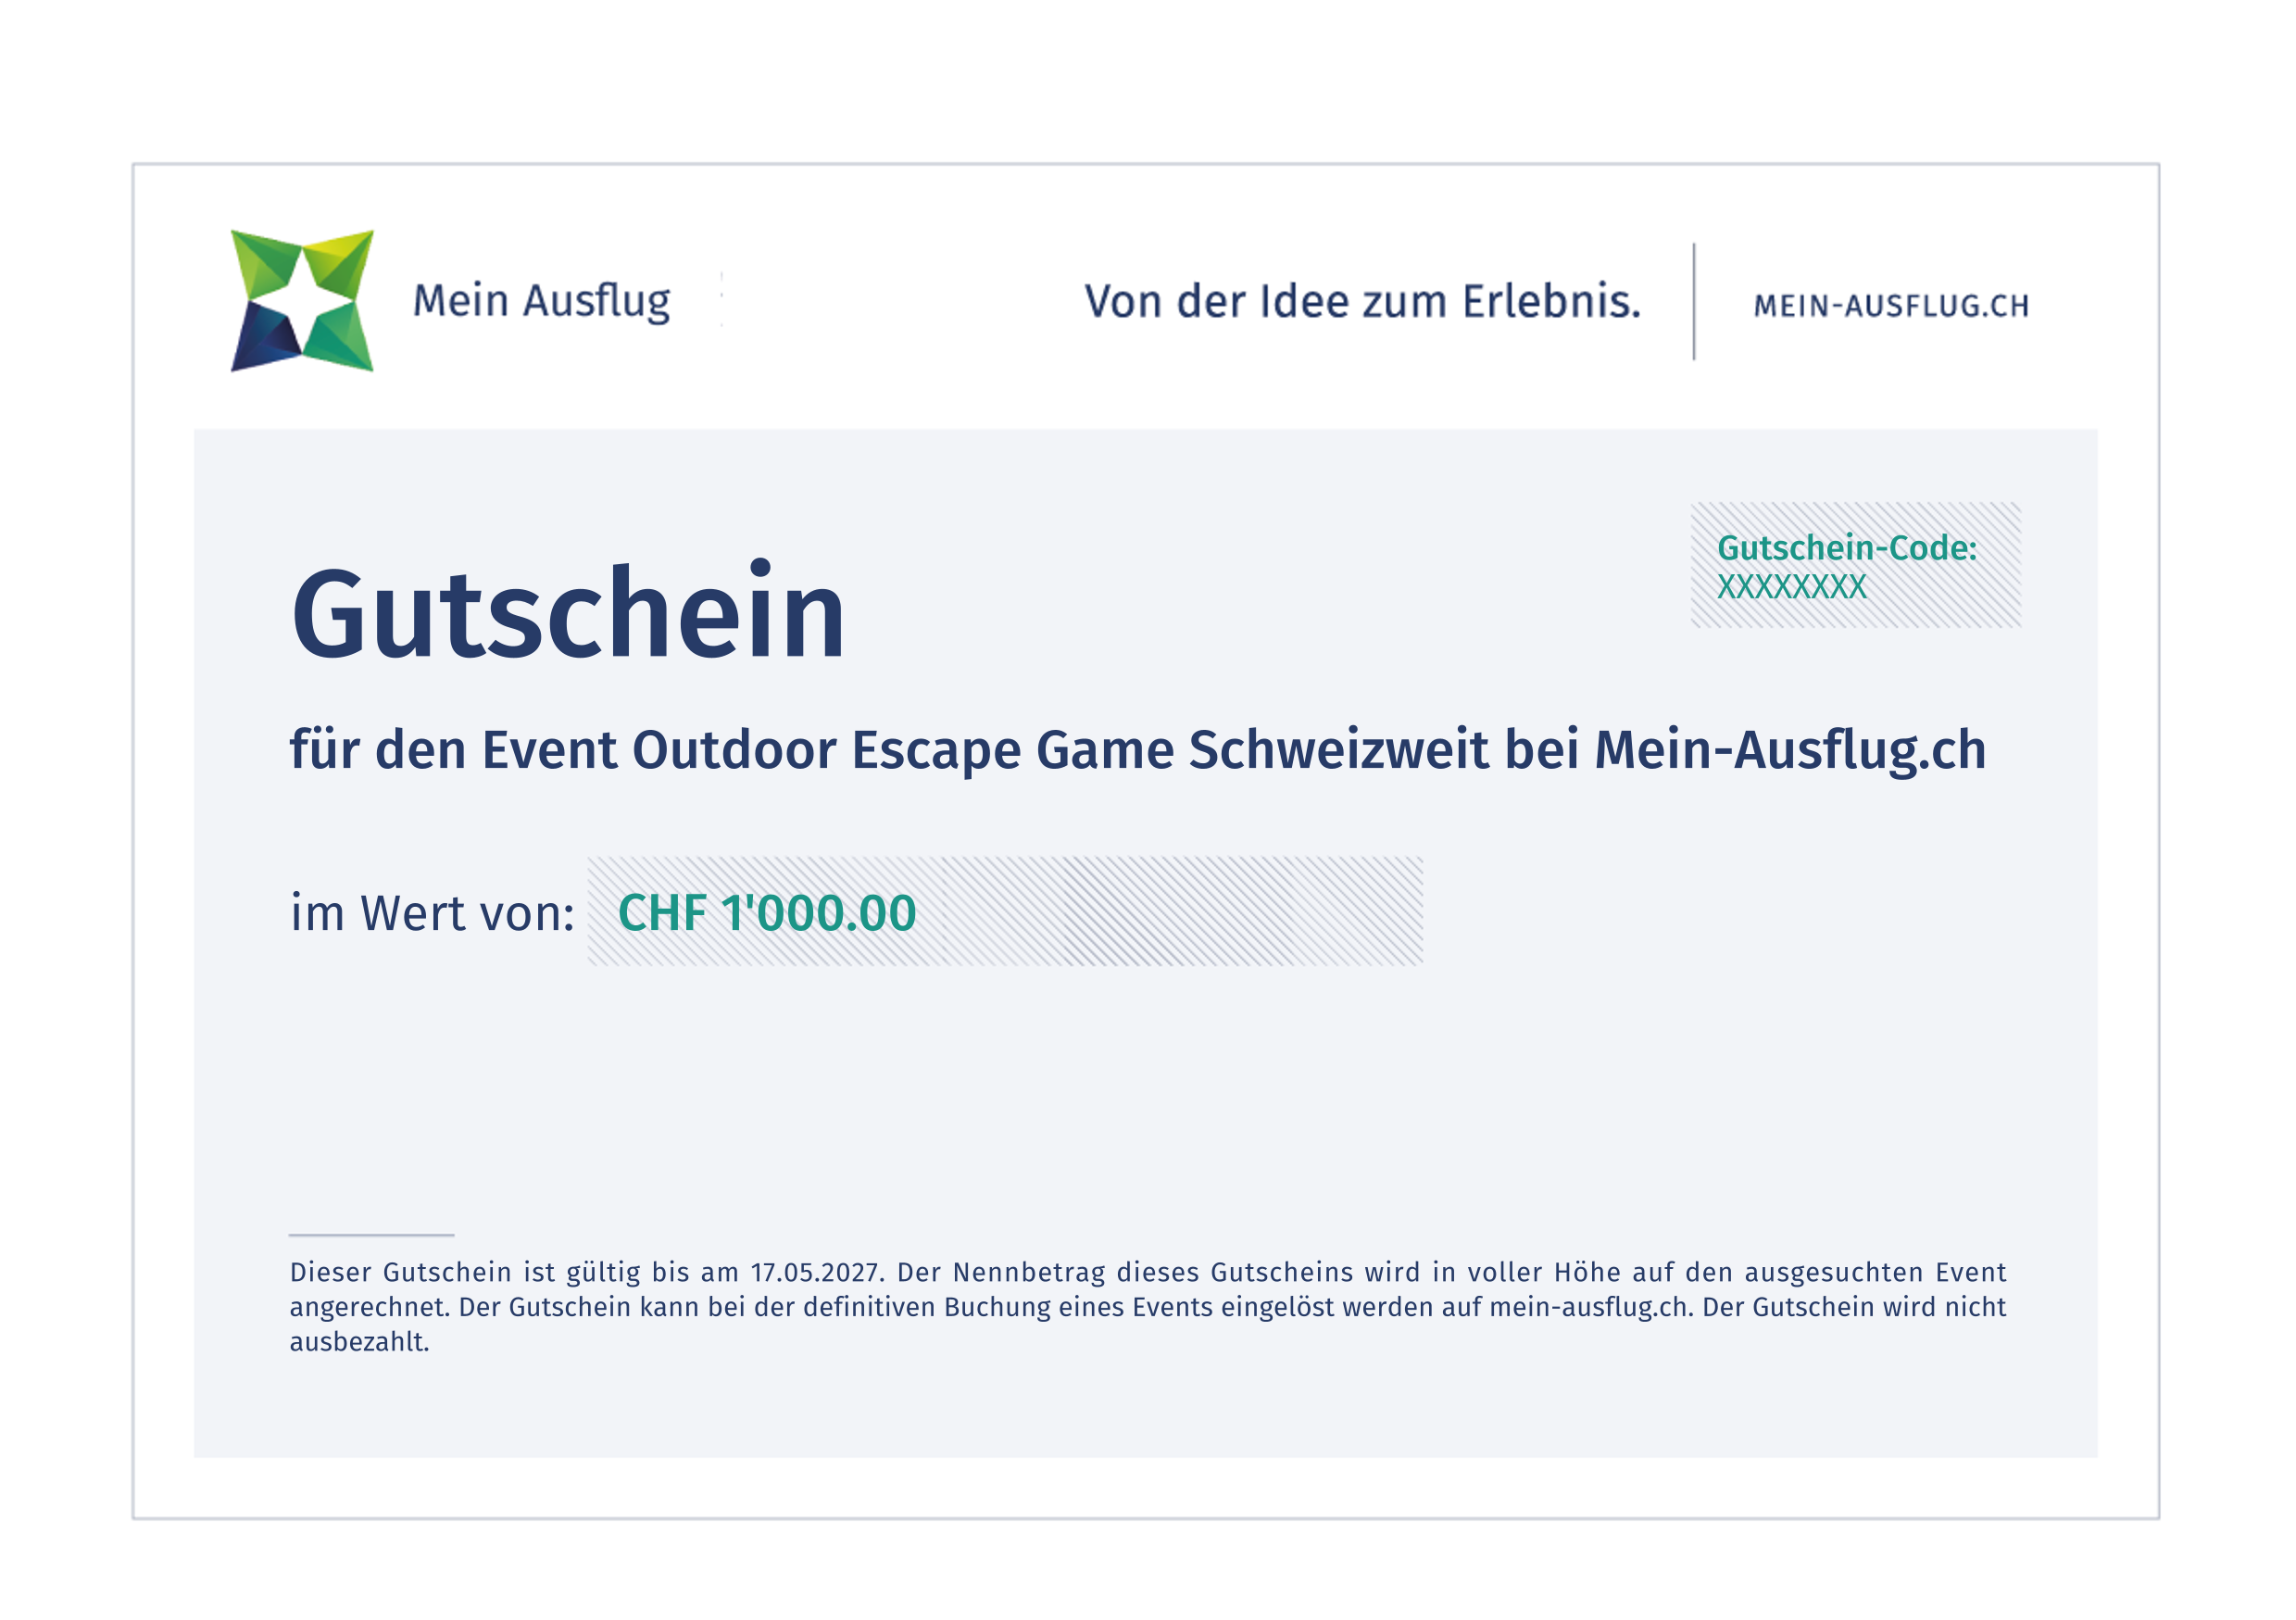 Outdoor Escape Game Schweizweit